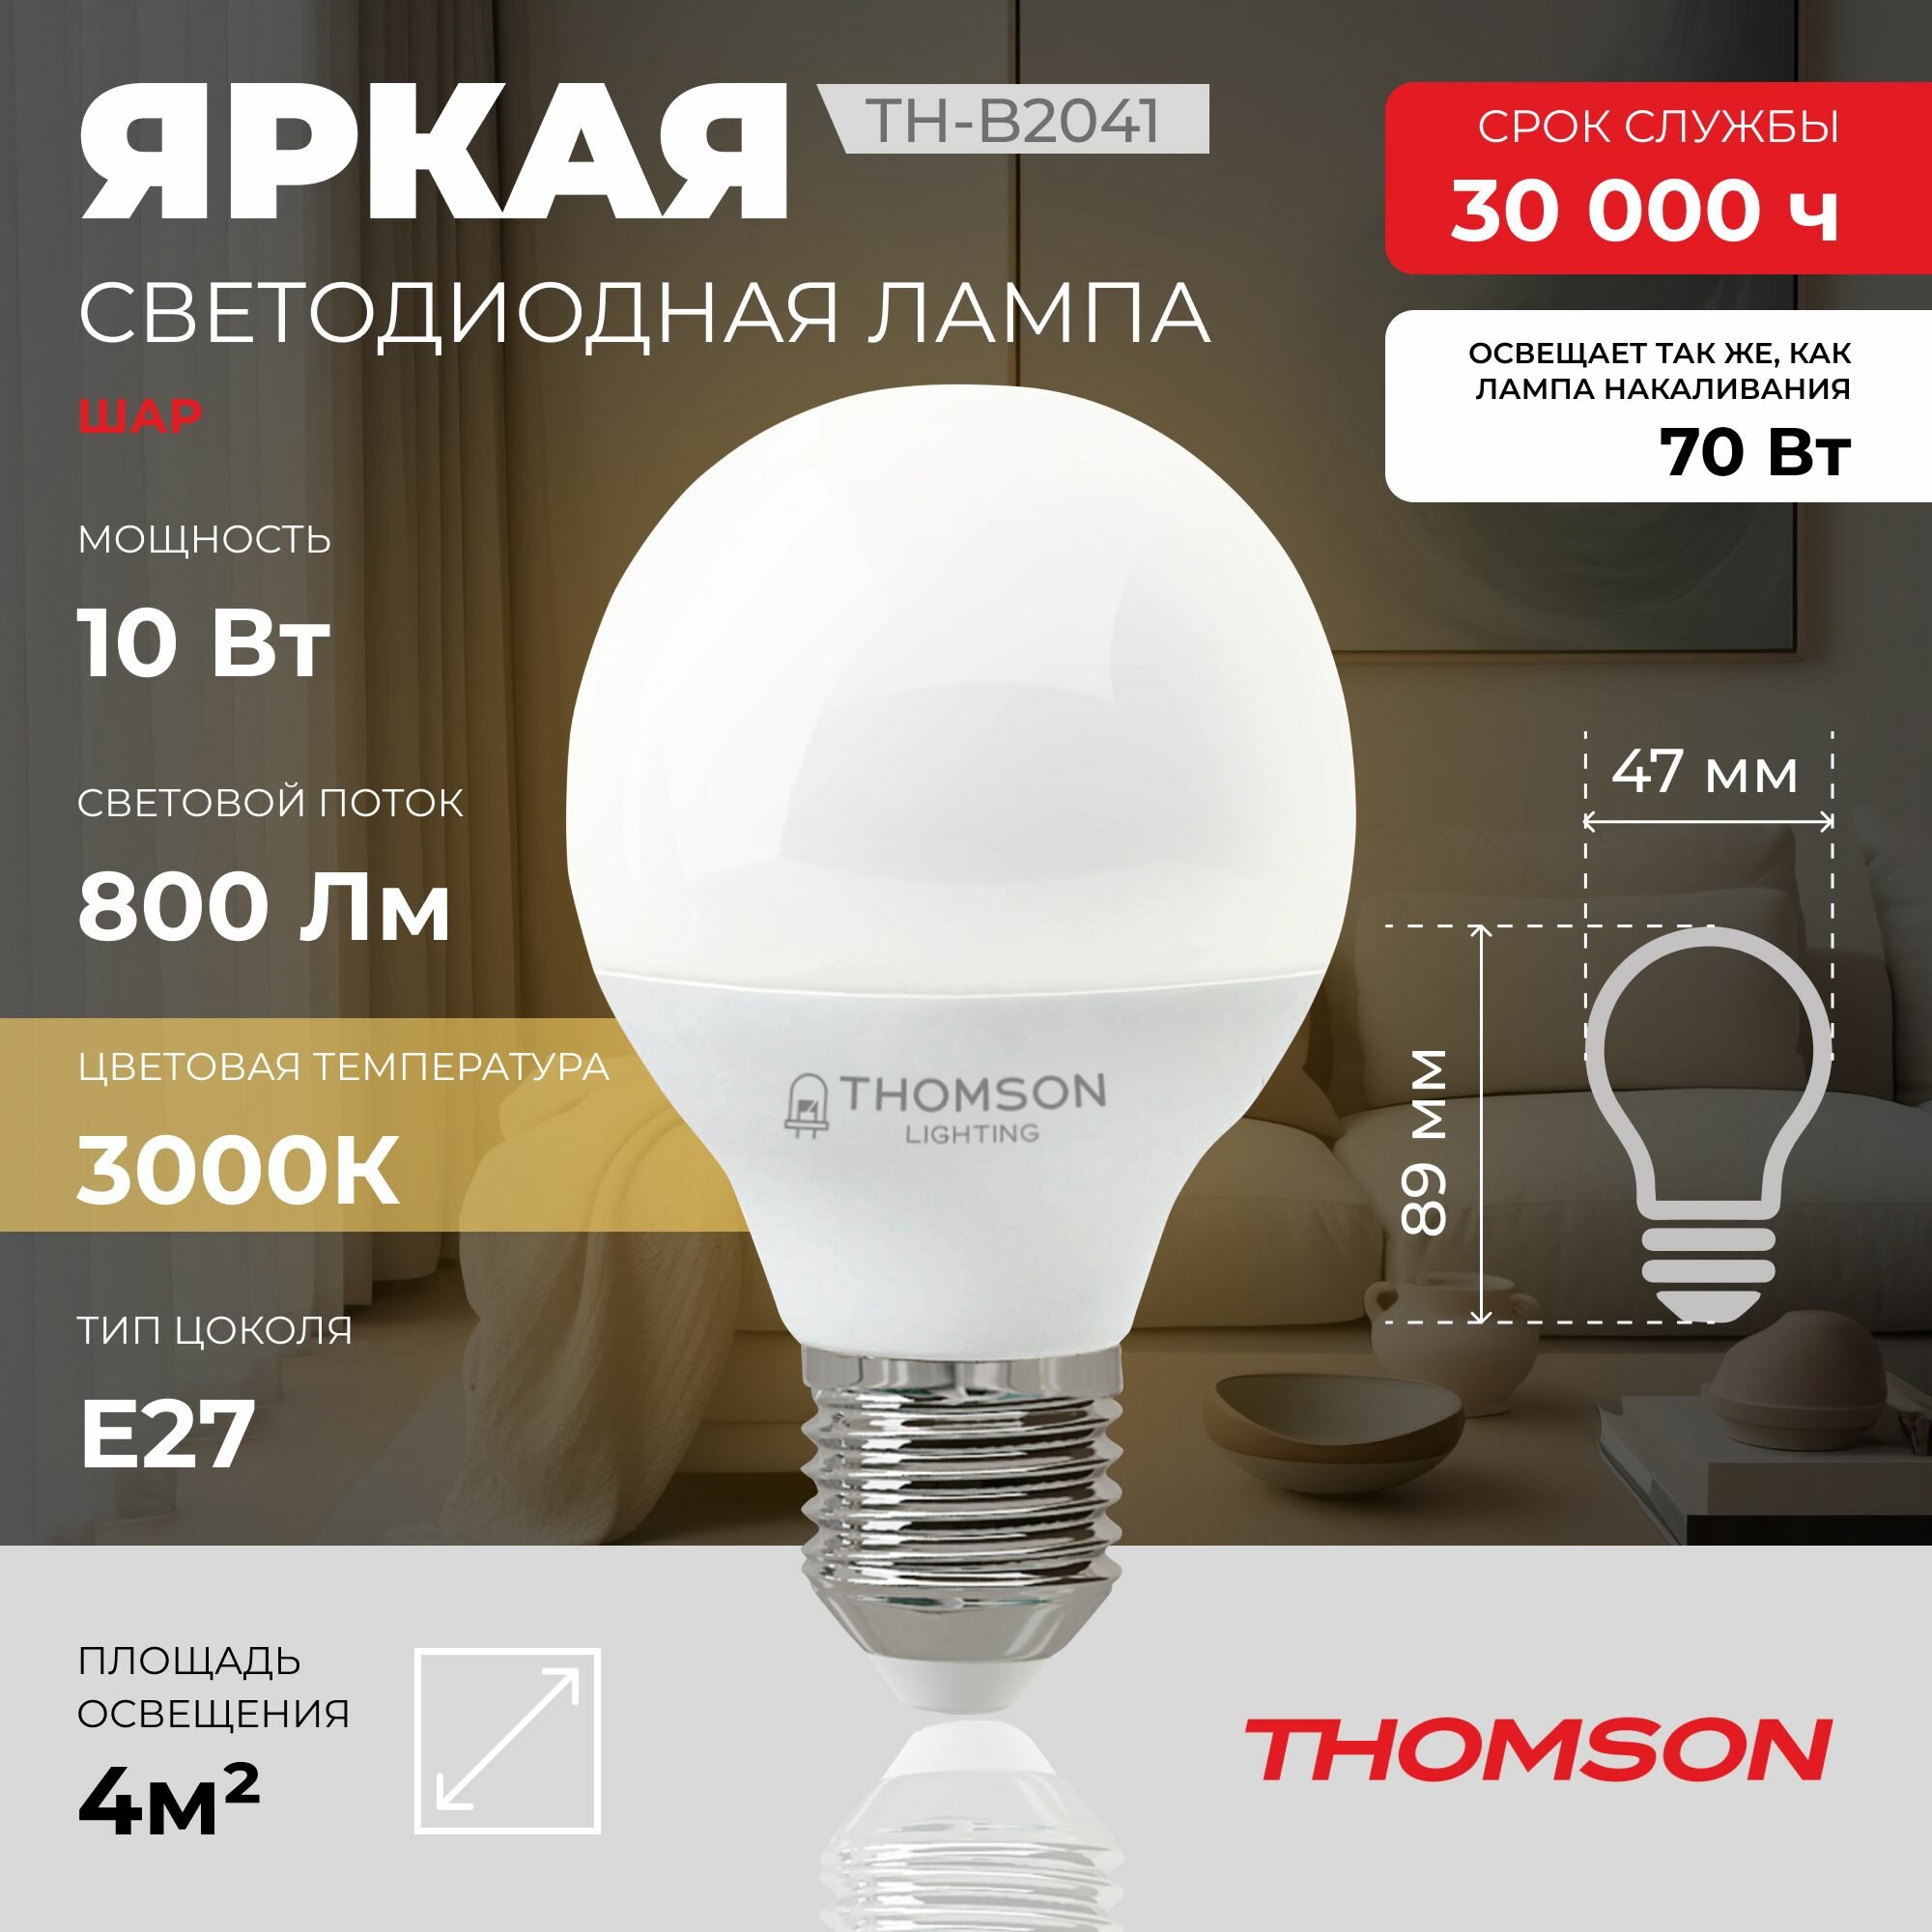 Лампочка Thomson TH-B2041 10 Вт, E27, 3000K, шар, теплый белый свет